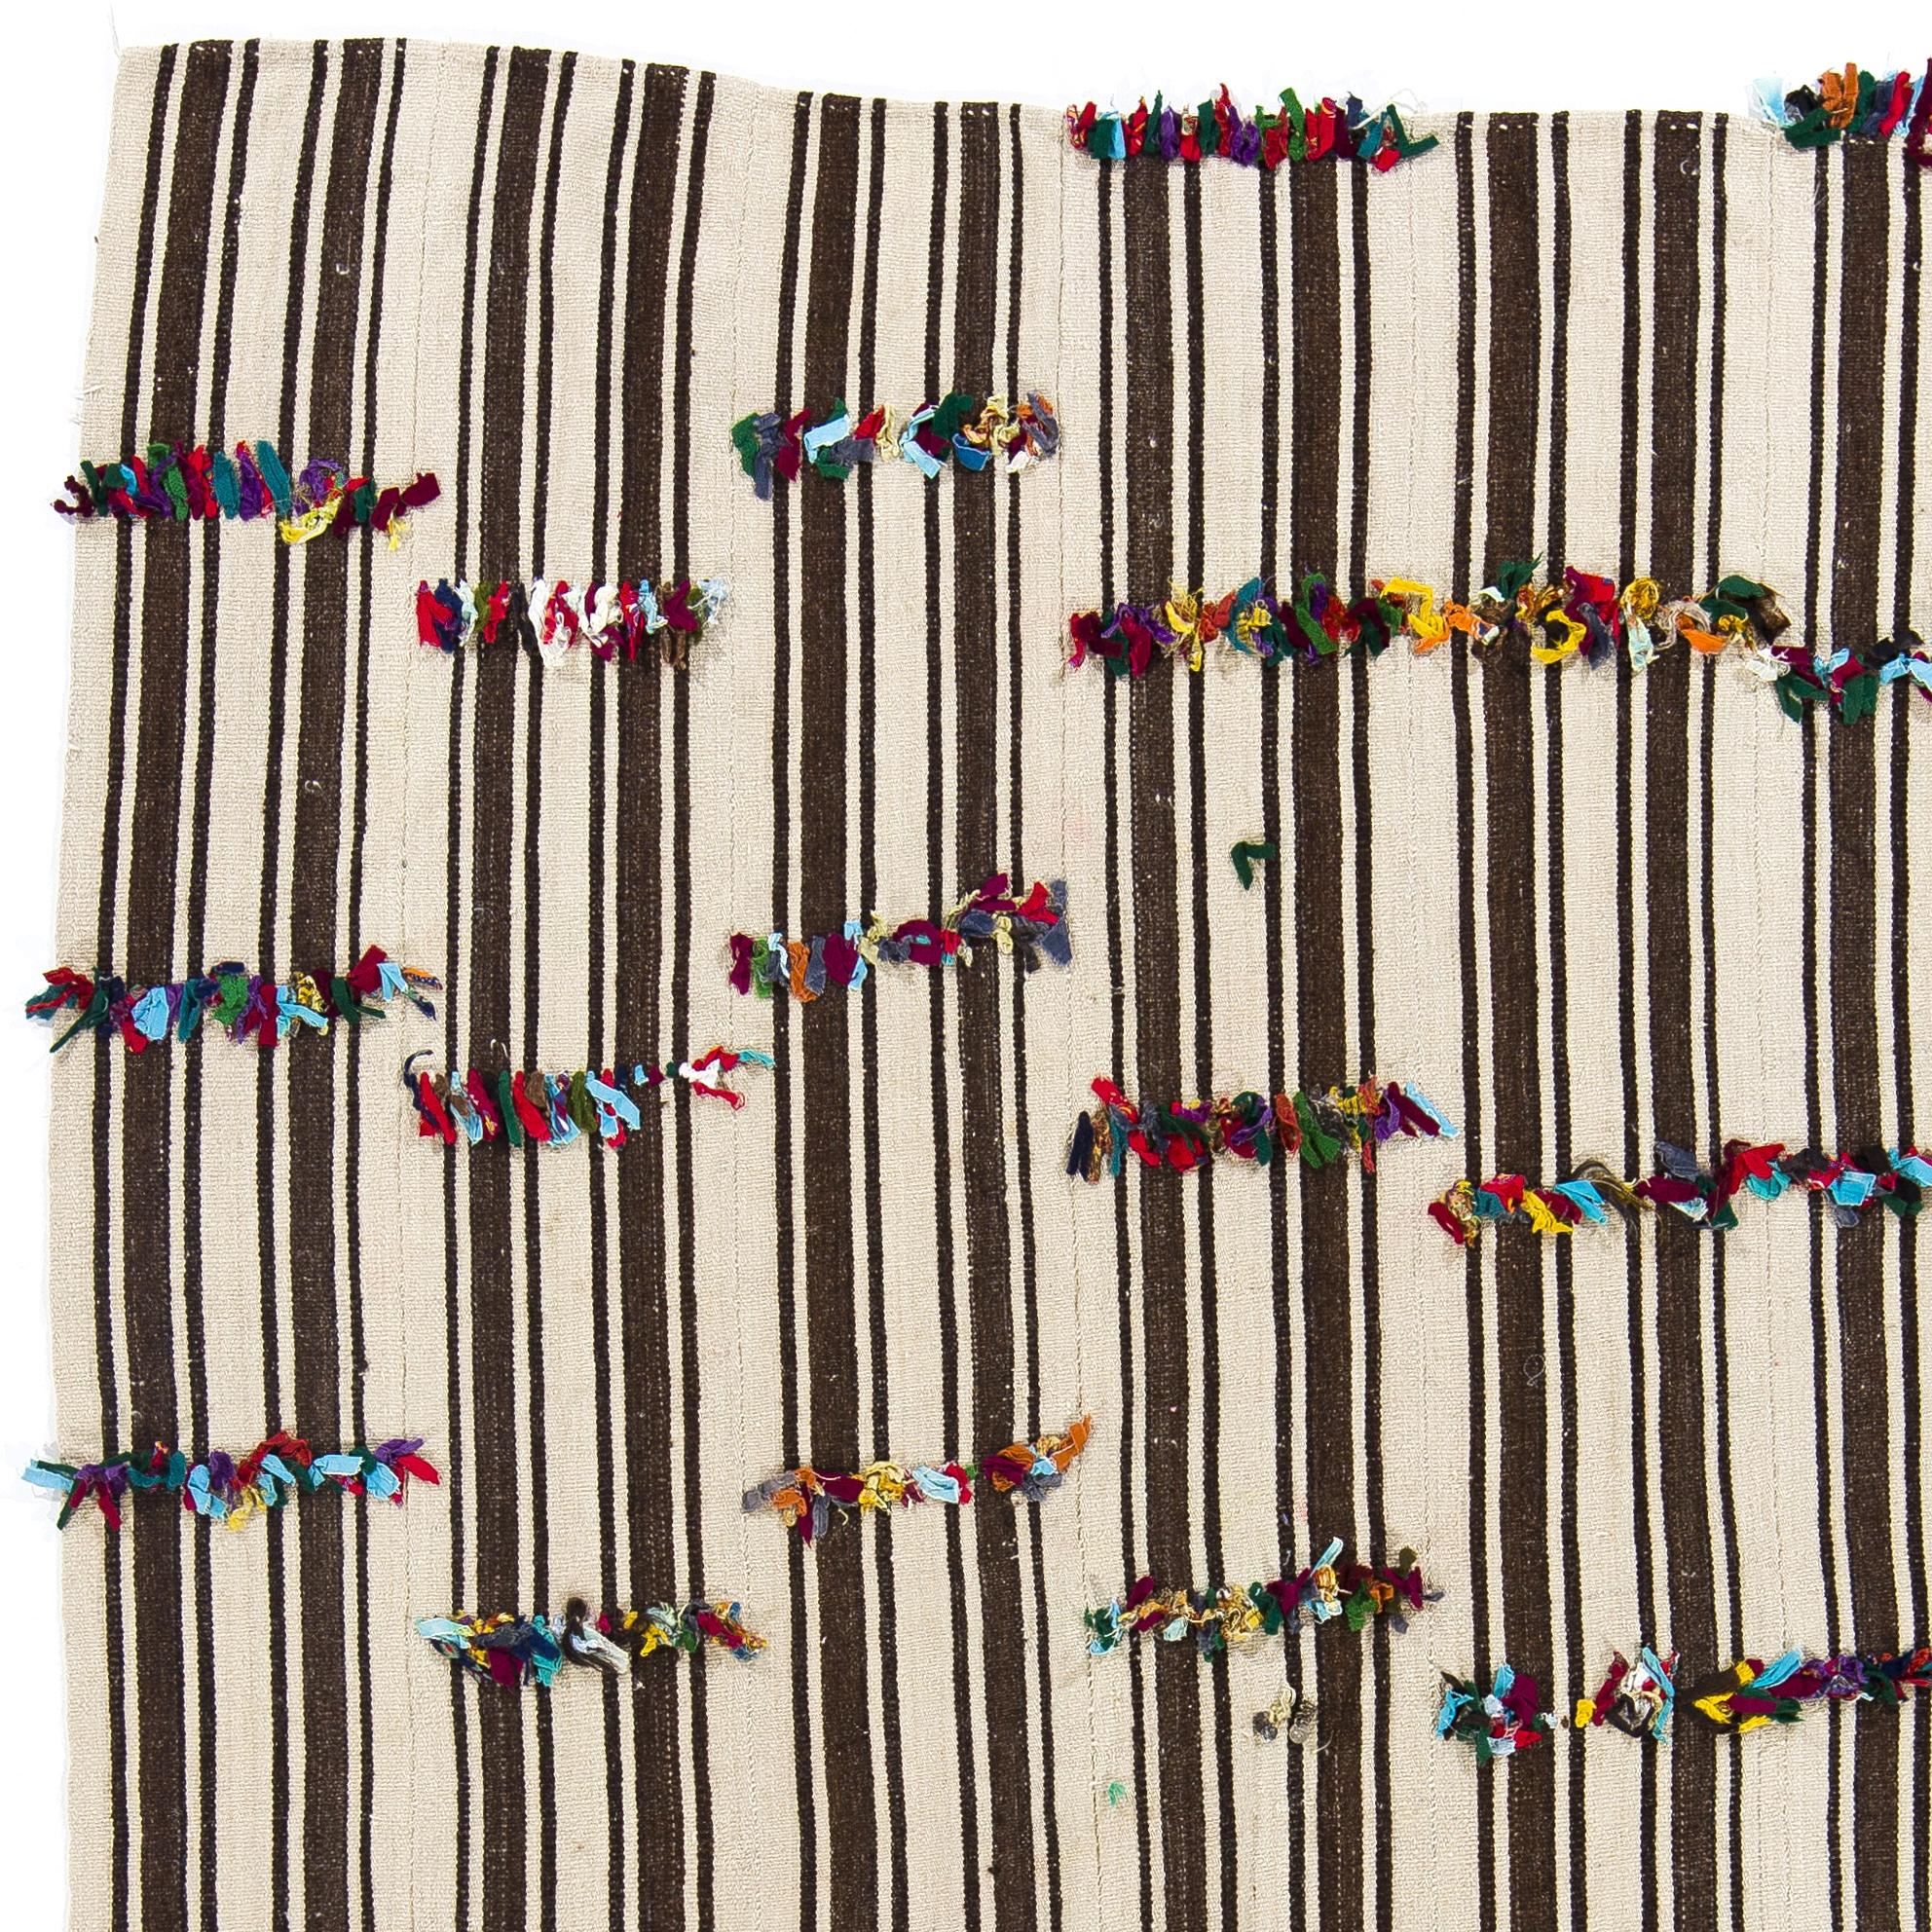 Dieser lebendige handgewebte Teppich wurde von kurdischen Dorfbewohnern in der Zentraltürkei im dritten Viertel des 20. Jahrhunderts für den täglichen Gebrauch hergestellt. 
Diese prächtigen alten Webarbeiten wurden auf verschiedene Weise verwendet,